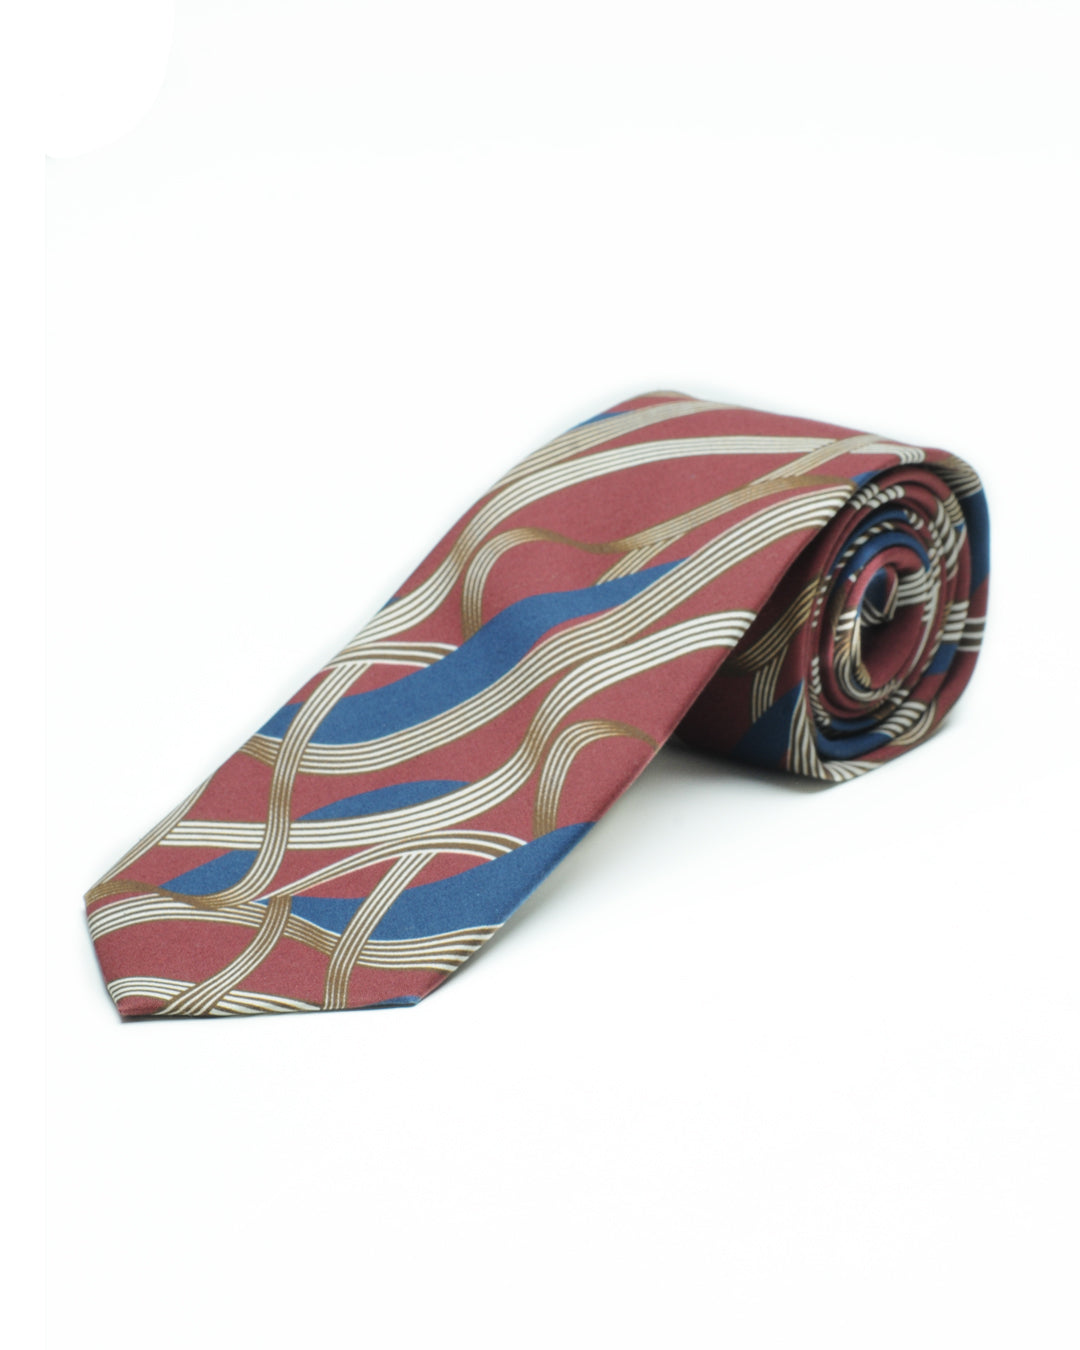 Cravatta stampata geometrico anni 70 bordeaux, tabacco e navy